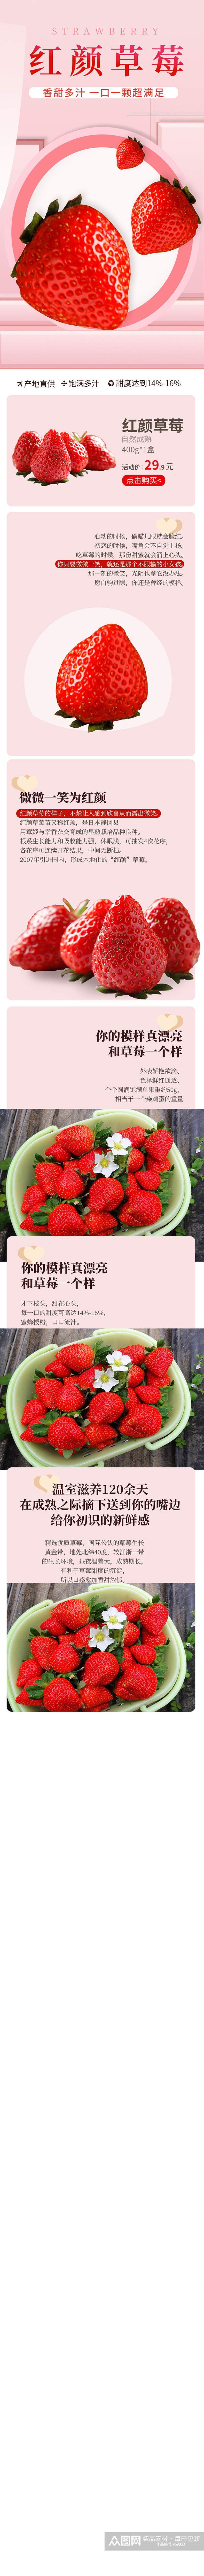 生鲜水果淘宝店铺宝贝草莓电商详情页素材